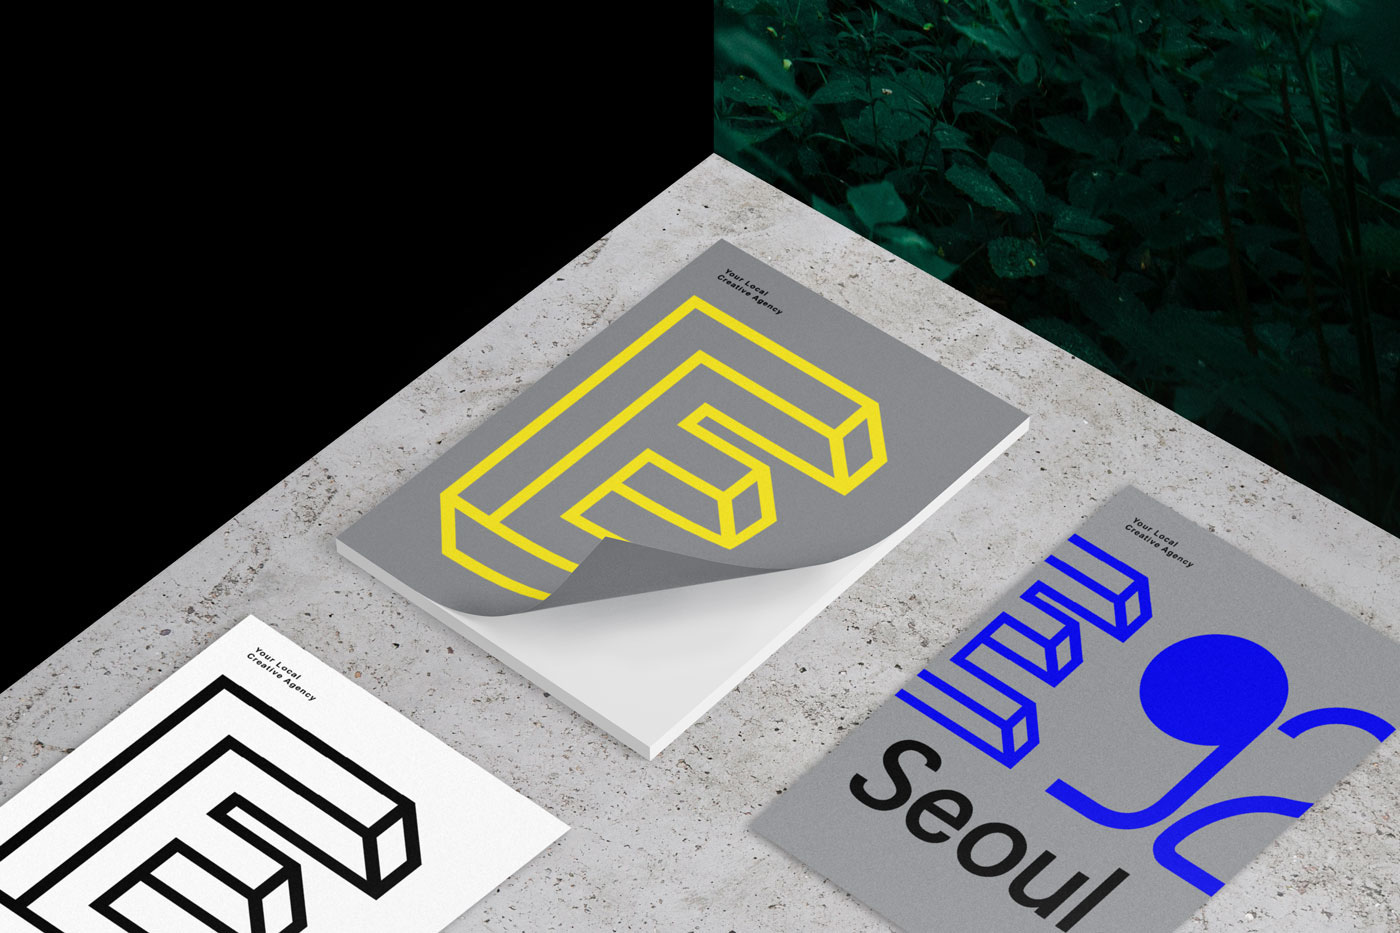 e92 seoul seoul design South Korea